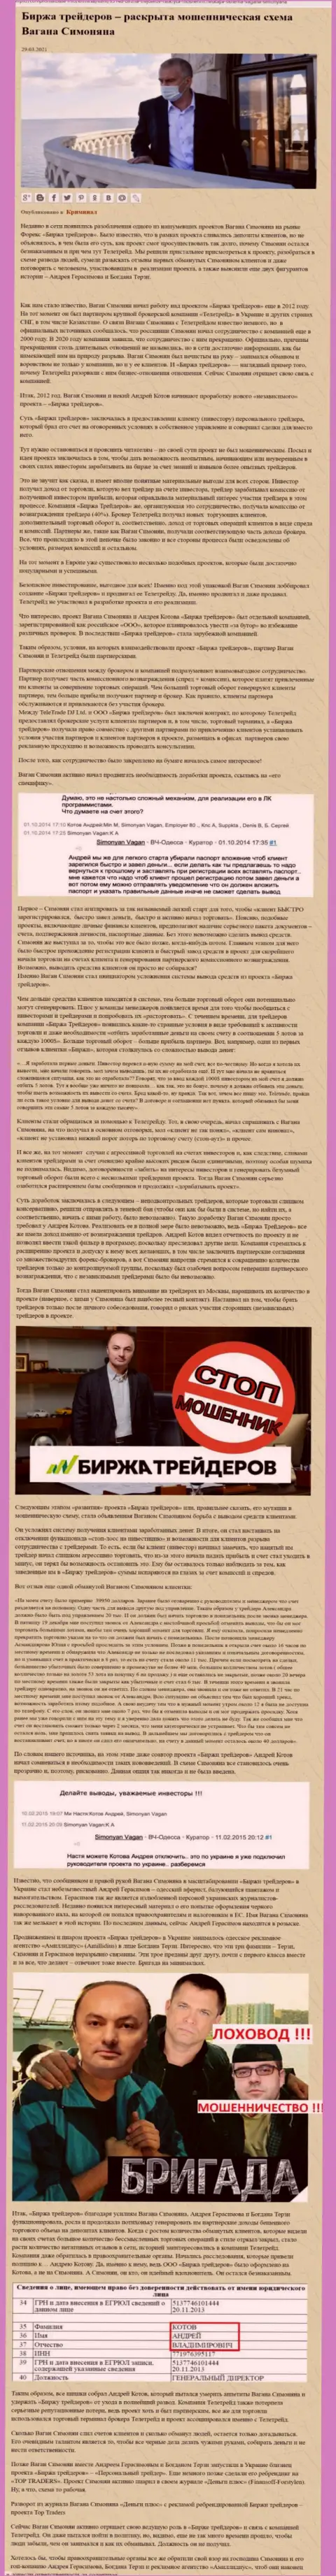 Рекламой фирмы Биржа Трейдеров, связанной с мошенниками ТелеТрейд Орг, также был занят Богдан Михайлович Терзи